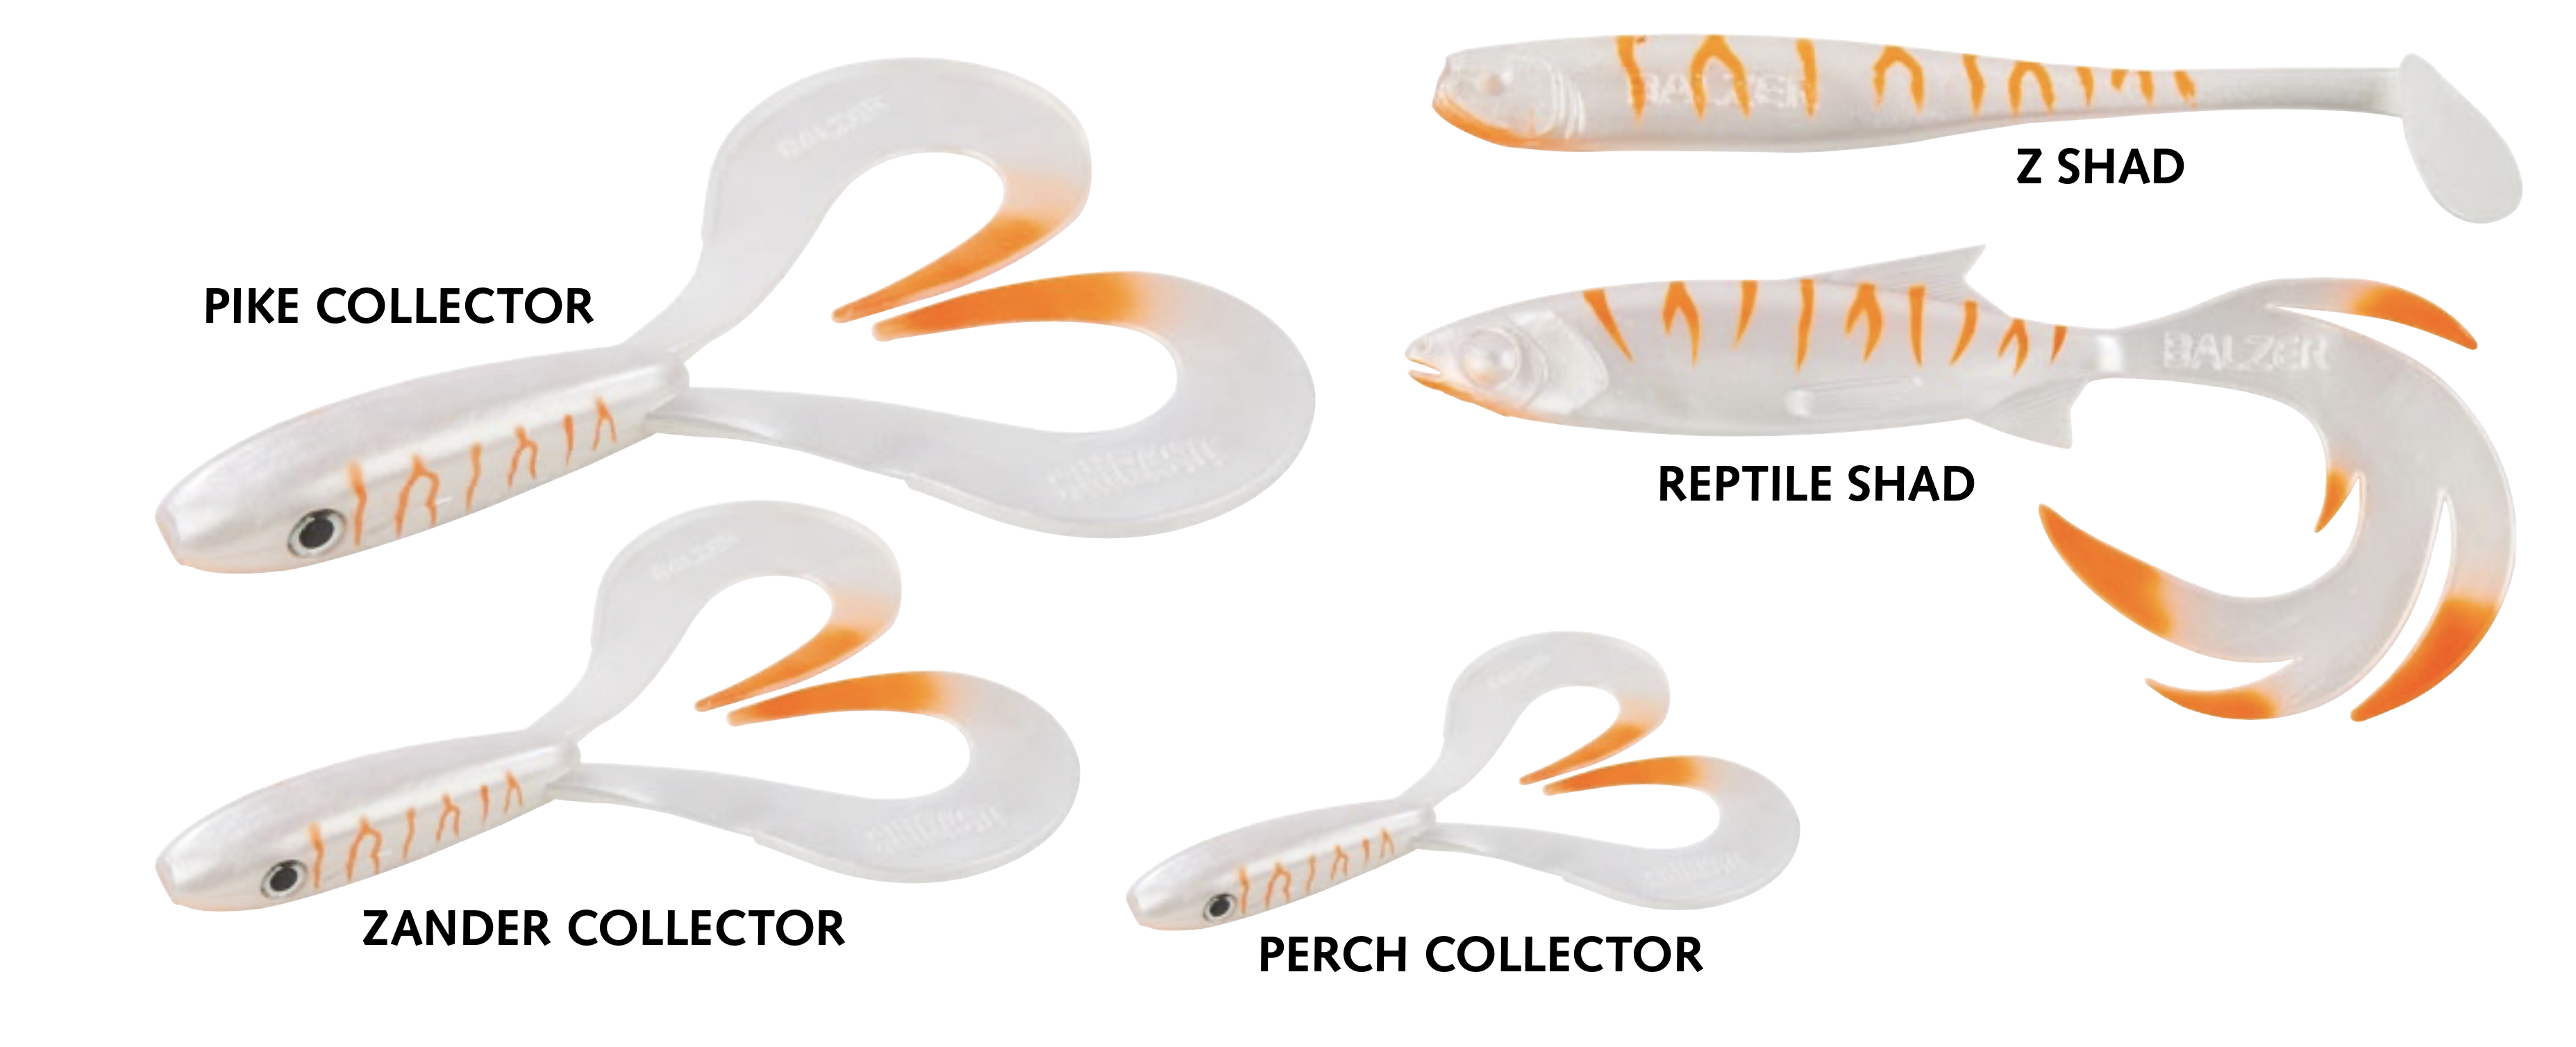 Balzer Albino Sonderfarbe Matze Koch Pike Zander Perch Collector Reptile Z Shad 